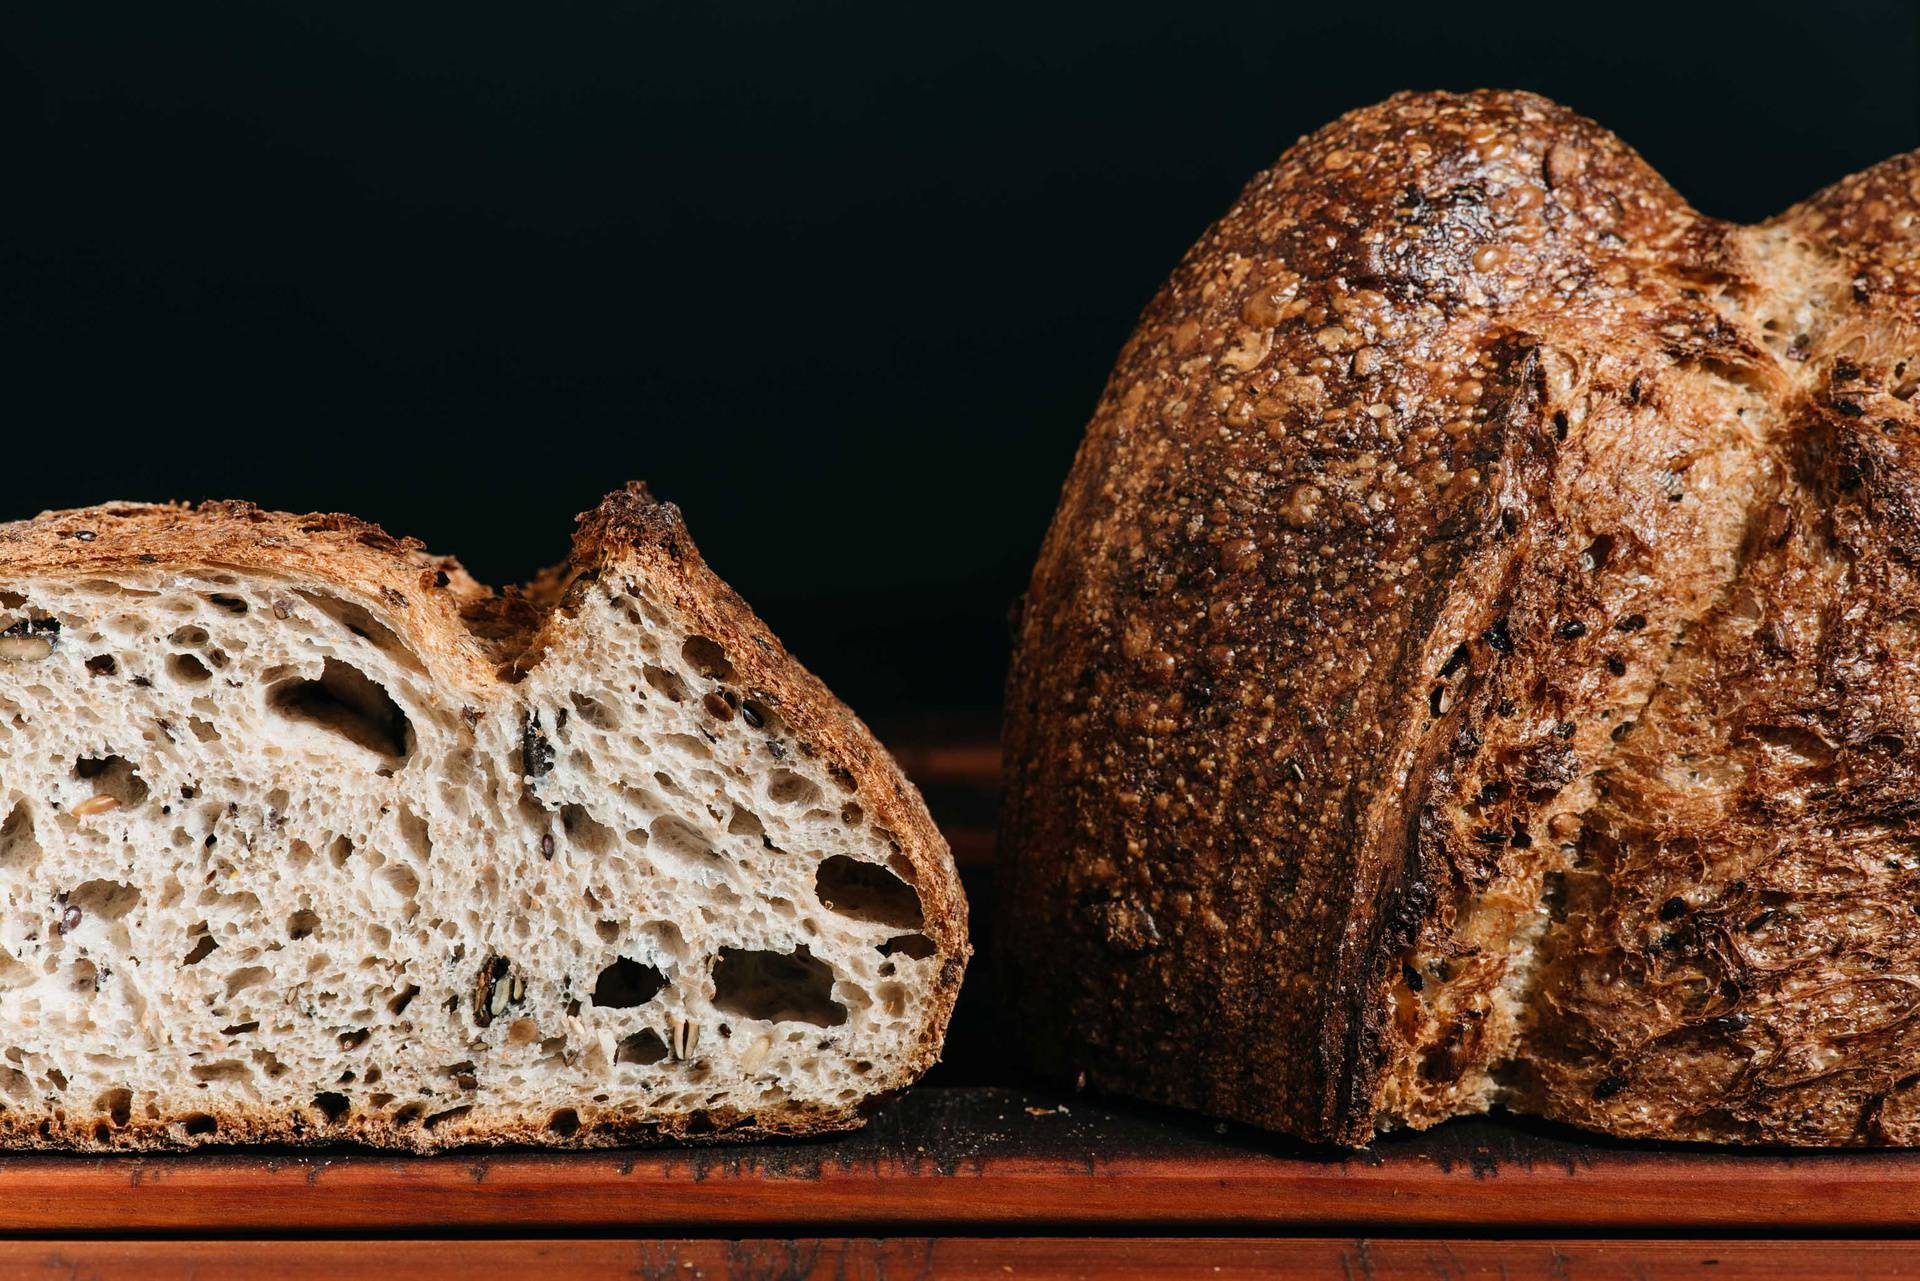 Laži o kruhu u koje većina još vjeruje: Onaj bijeli nas deblja, a zamrzavanje je dobra opcija